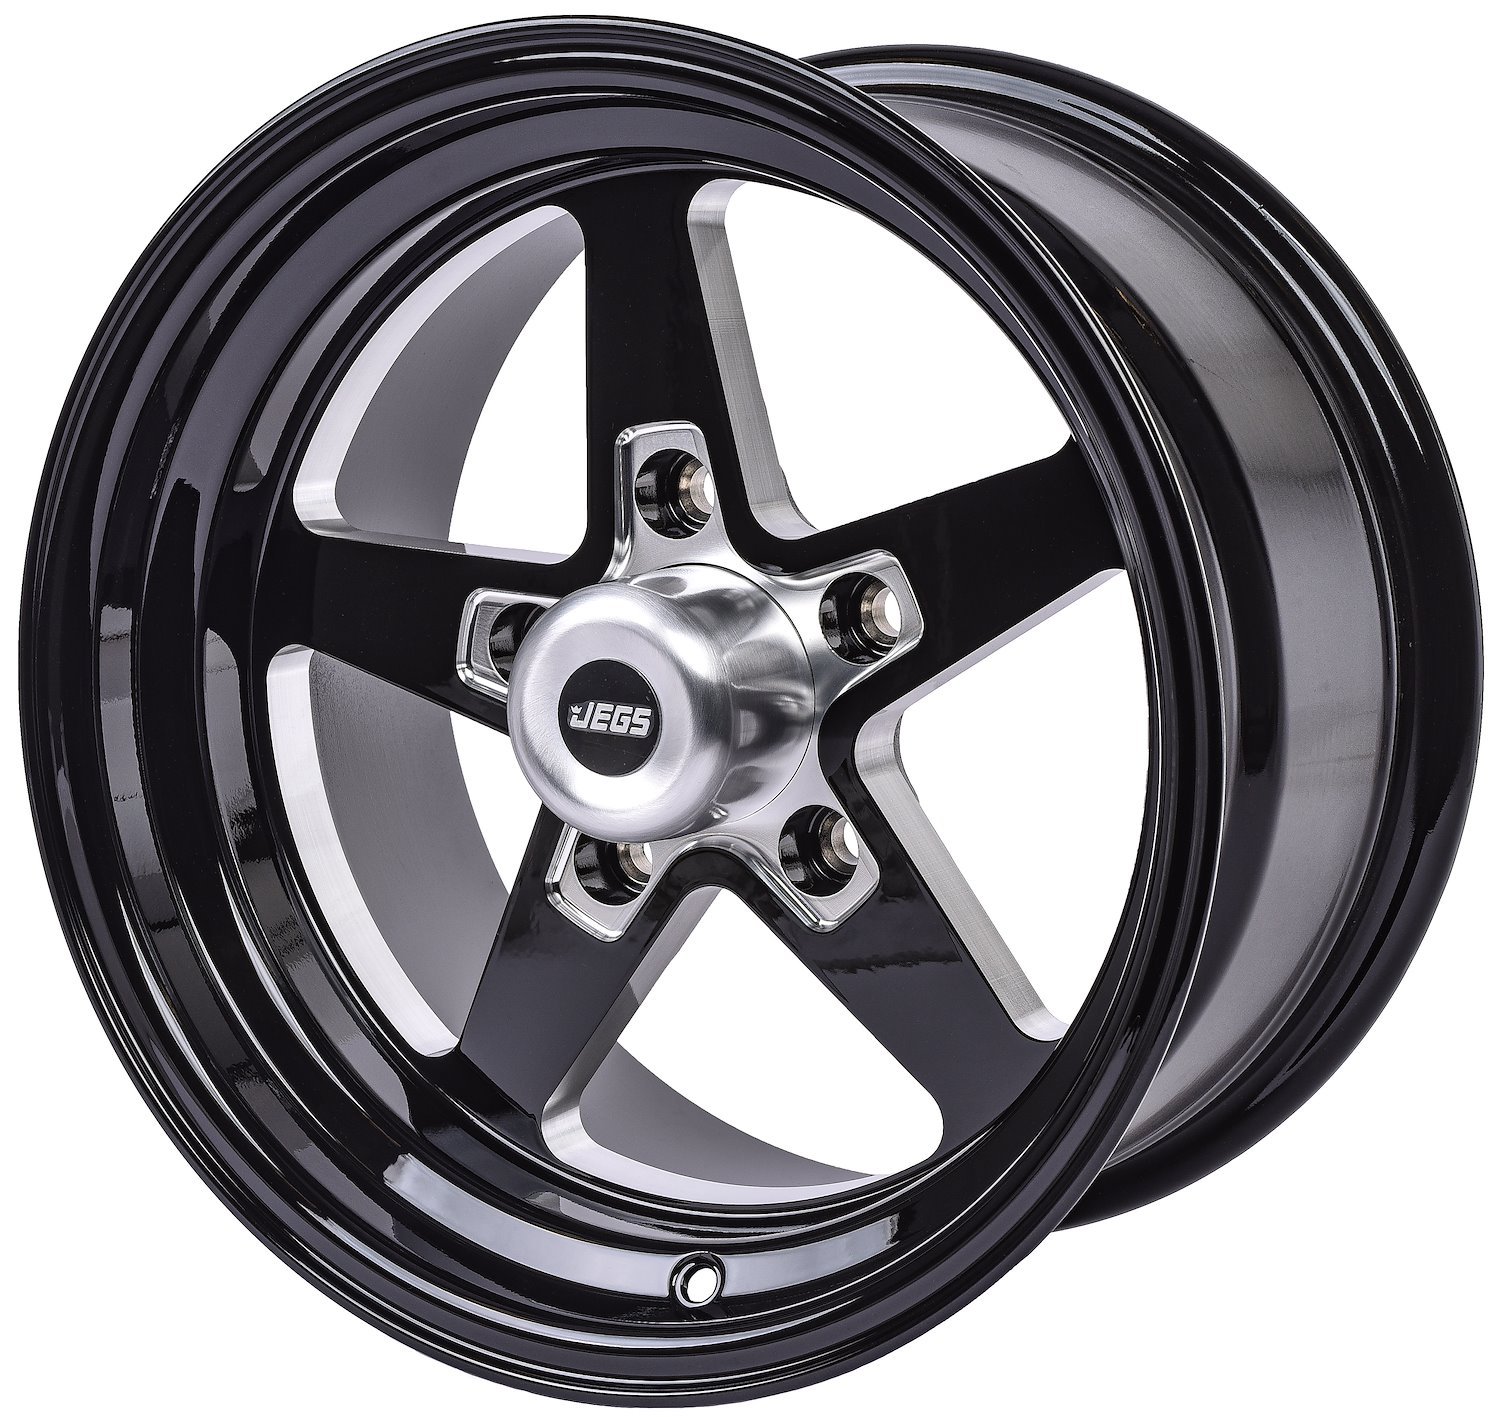 SSR Star Wheel [Size: 15" x 10"] Gloss Black